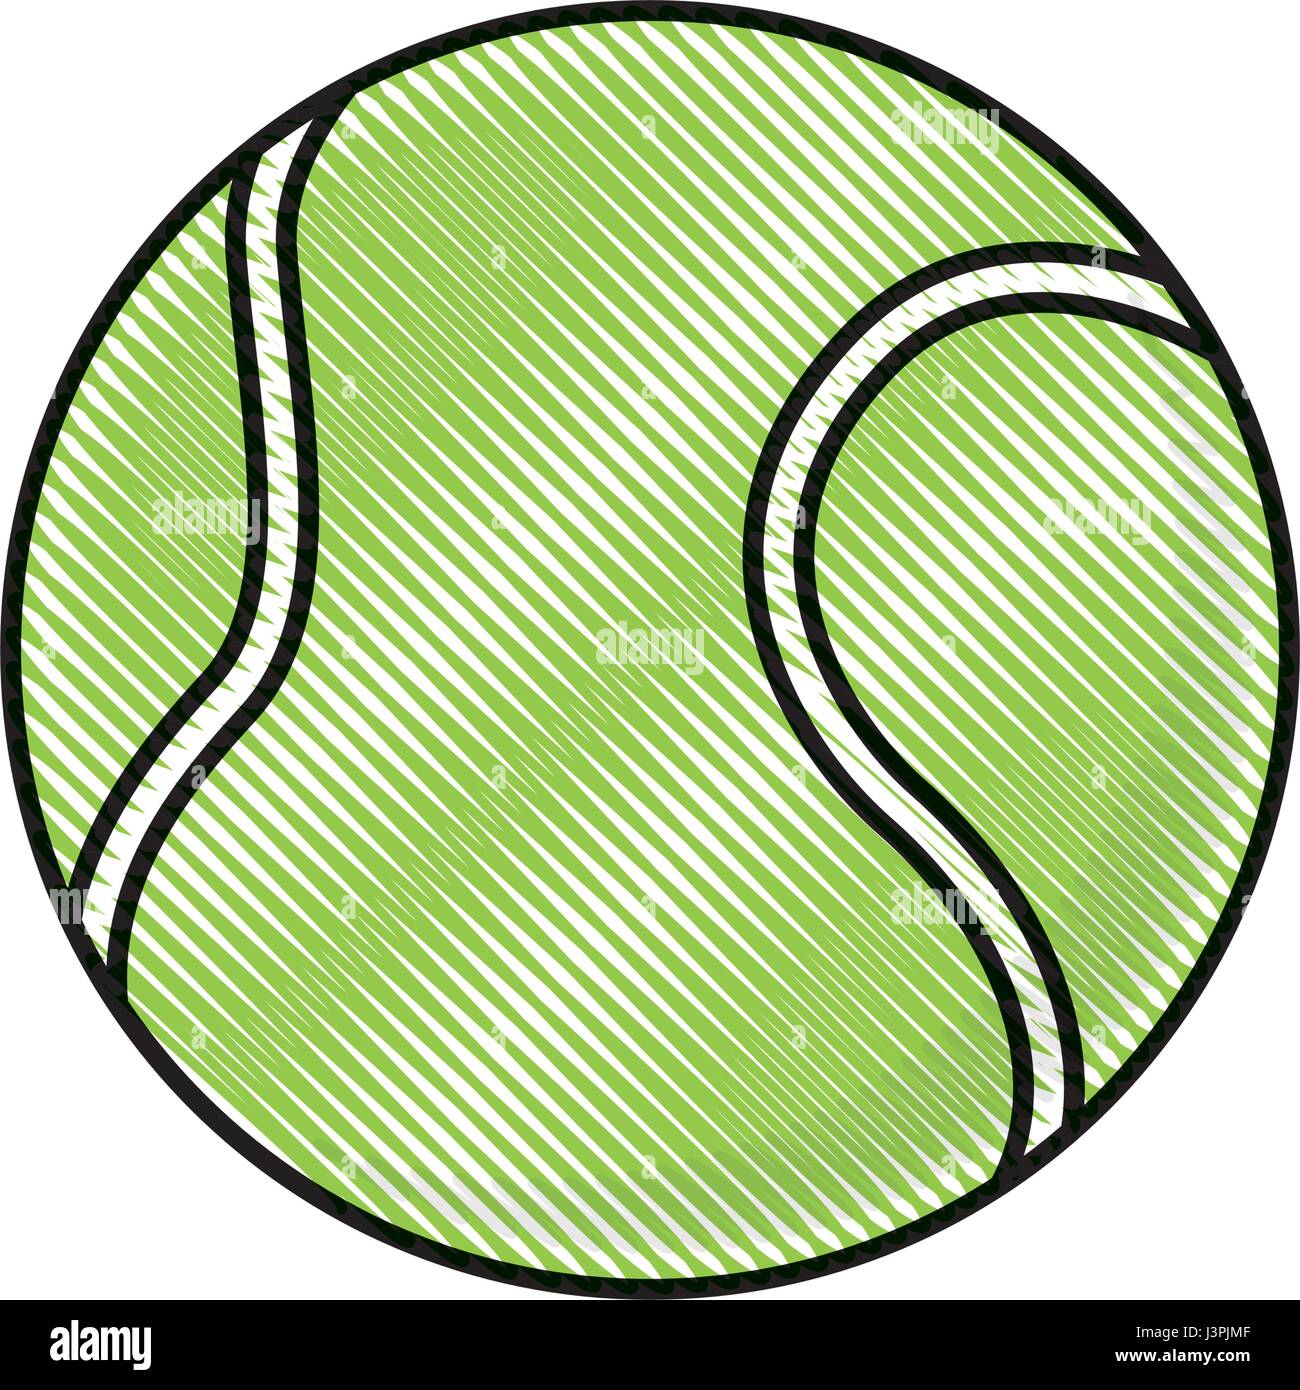 Balle de tennis dessin élément concurrence sport Image Vectorielle Stock -  Alamy